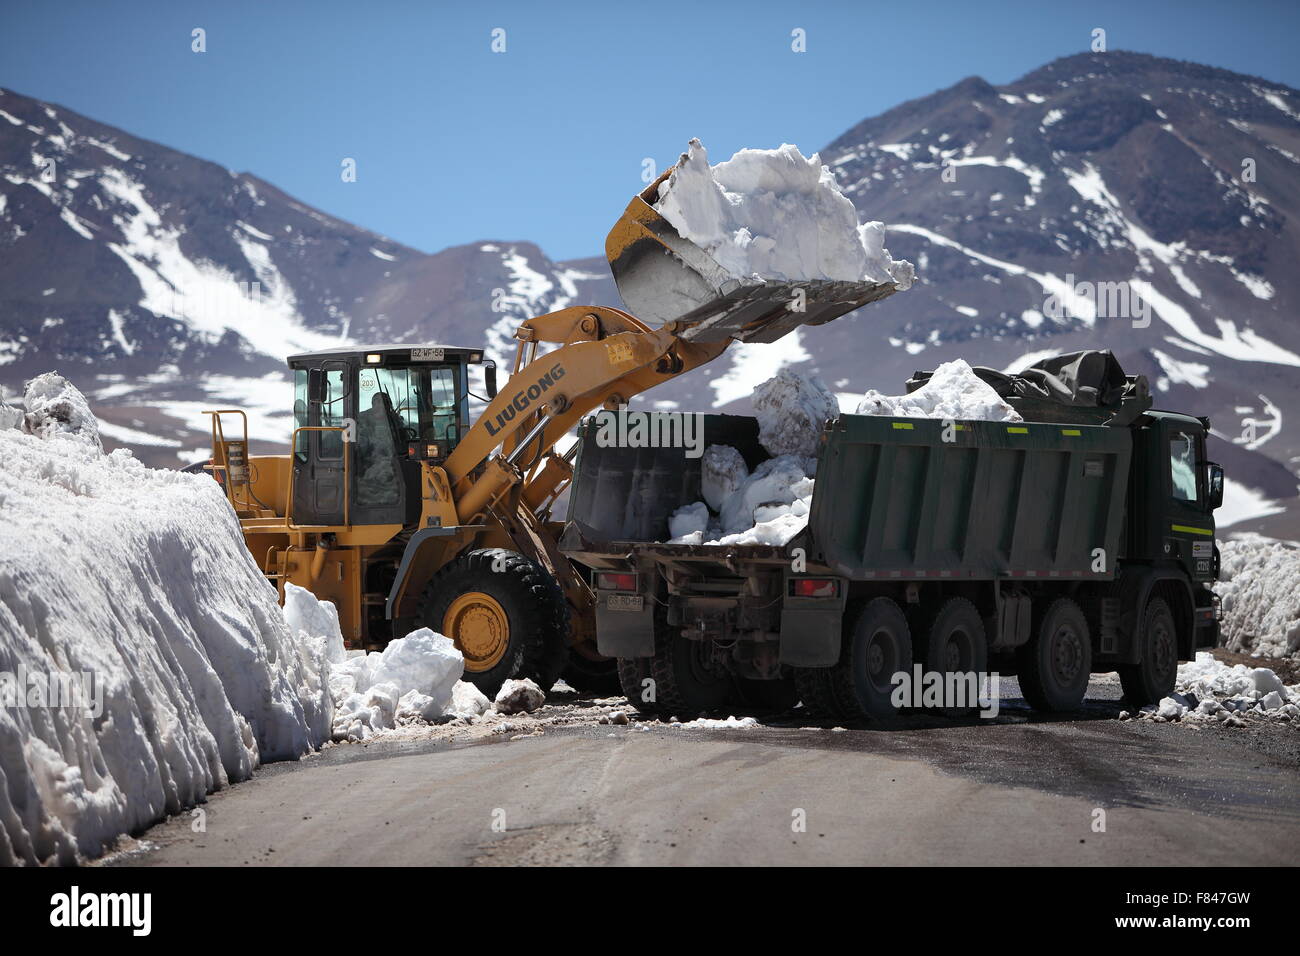 Route de compensation de la neige sur une route de haute altitude des Andes, dans le Chili. Le chargement d'une excavatrice camion avec la neige. Banque D'Images